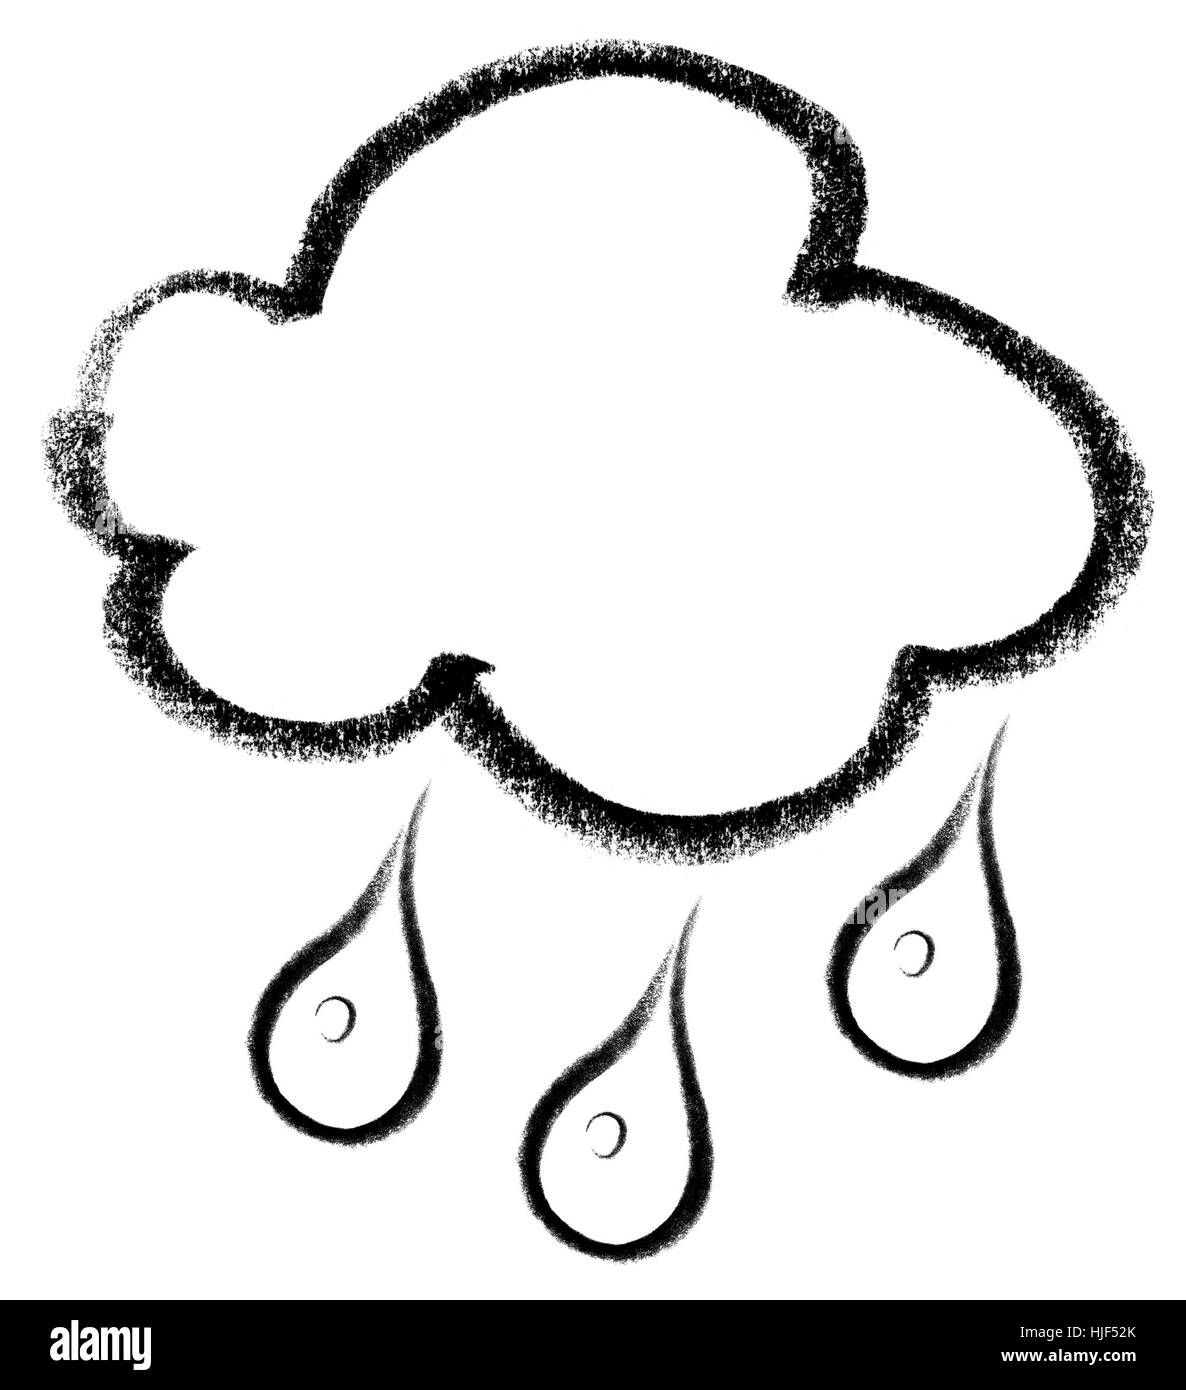 Crayon-abbozzato illustrazione di una nuvola e gocce di pioggia Foto Stock